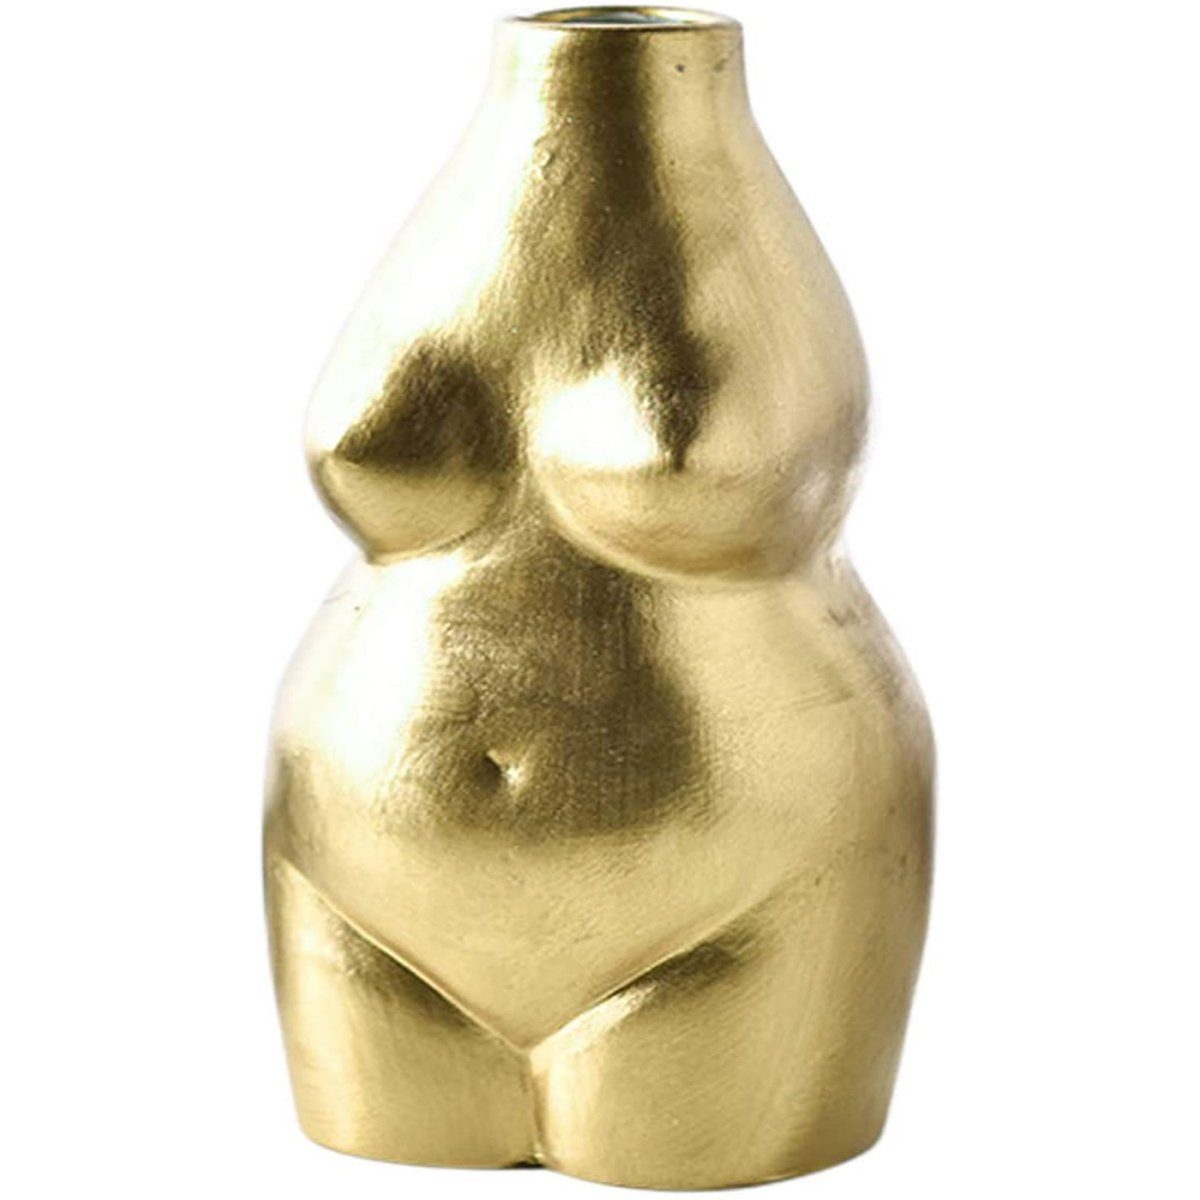 Jormftte Dekovase Weiblich Körper Blumentopf Gold Vase Statue,für Kunst Design,Keramik Deko